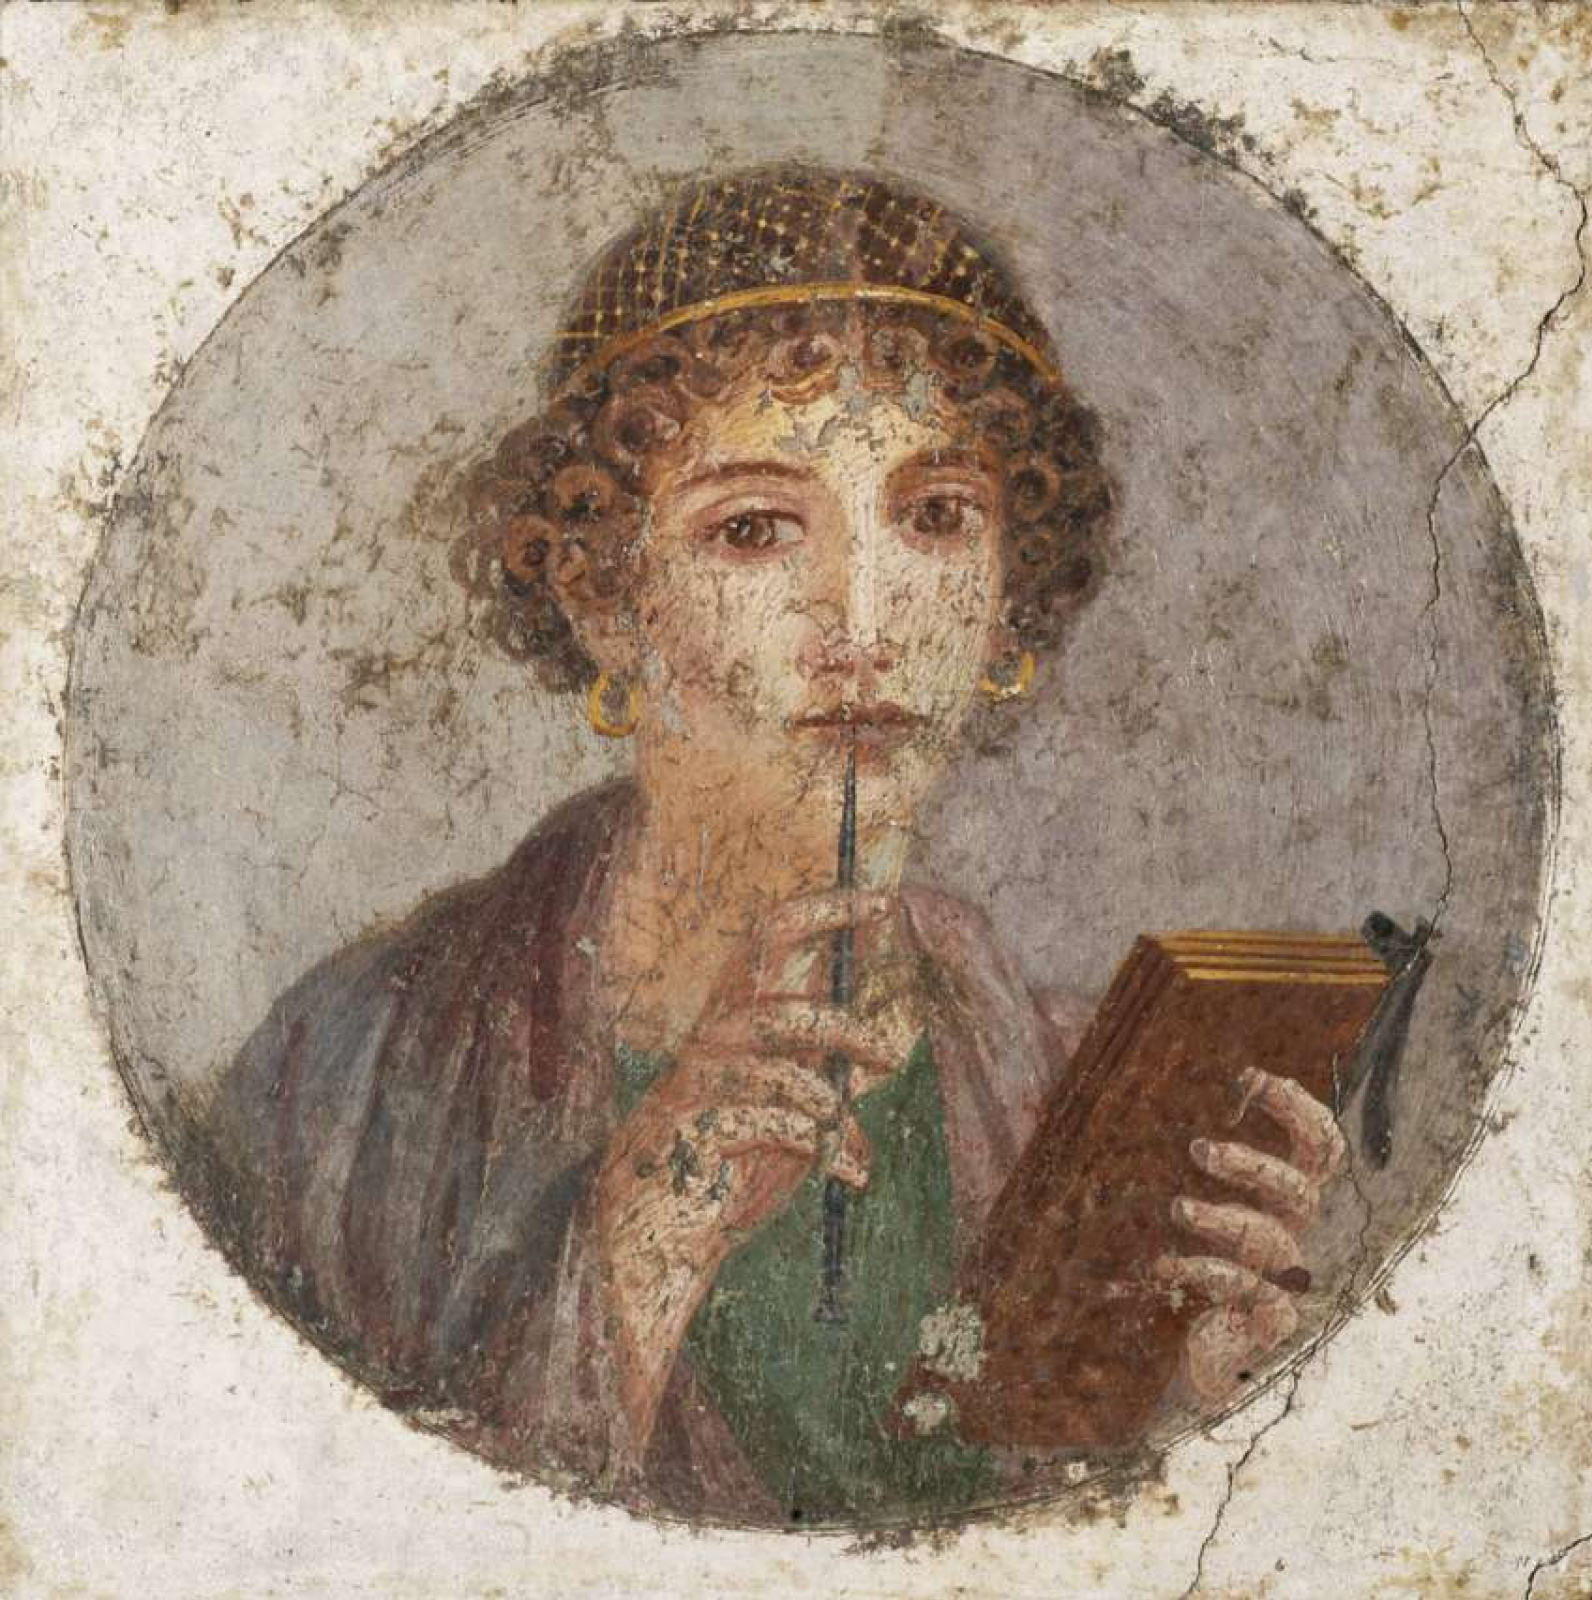 50 оттенков Помпеи: эротические фрески из борделя Древнего Рима